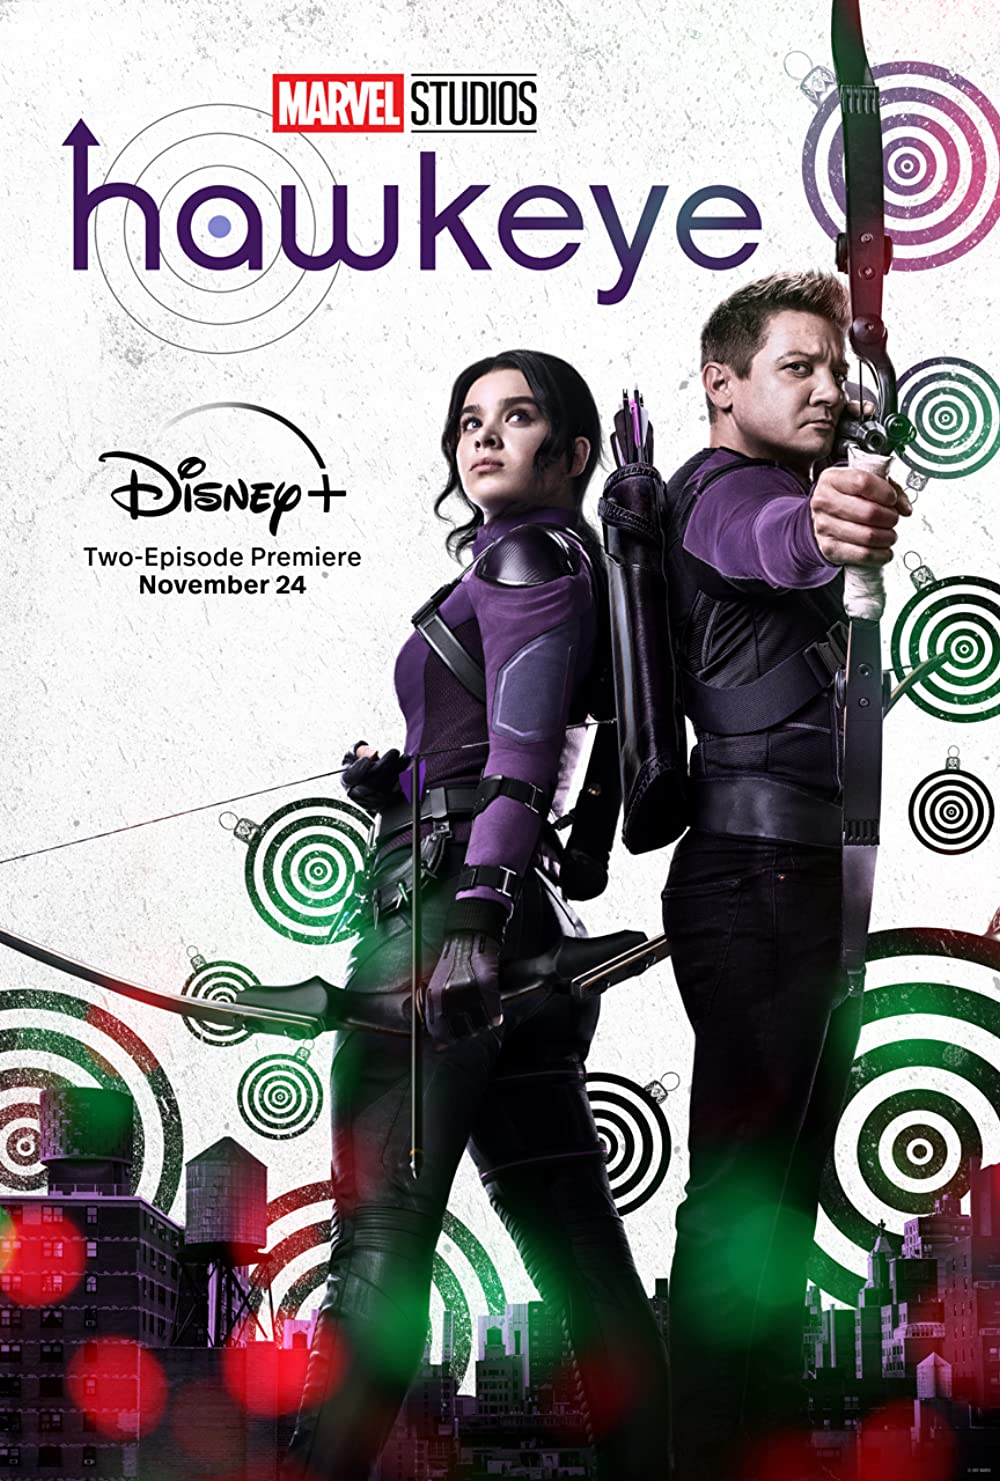 Hawkeye (2021), on Disney+